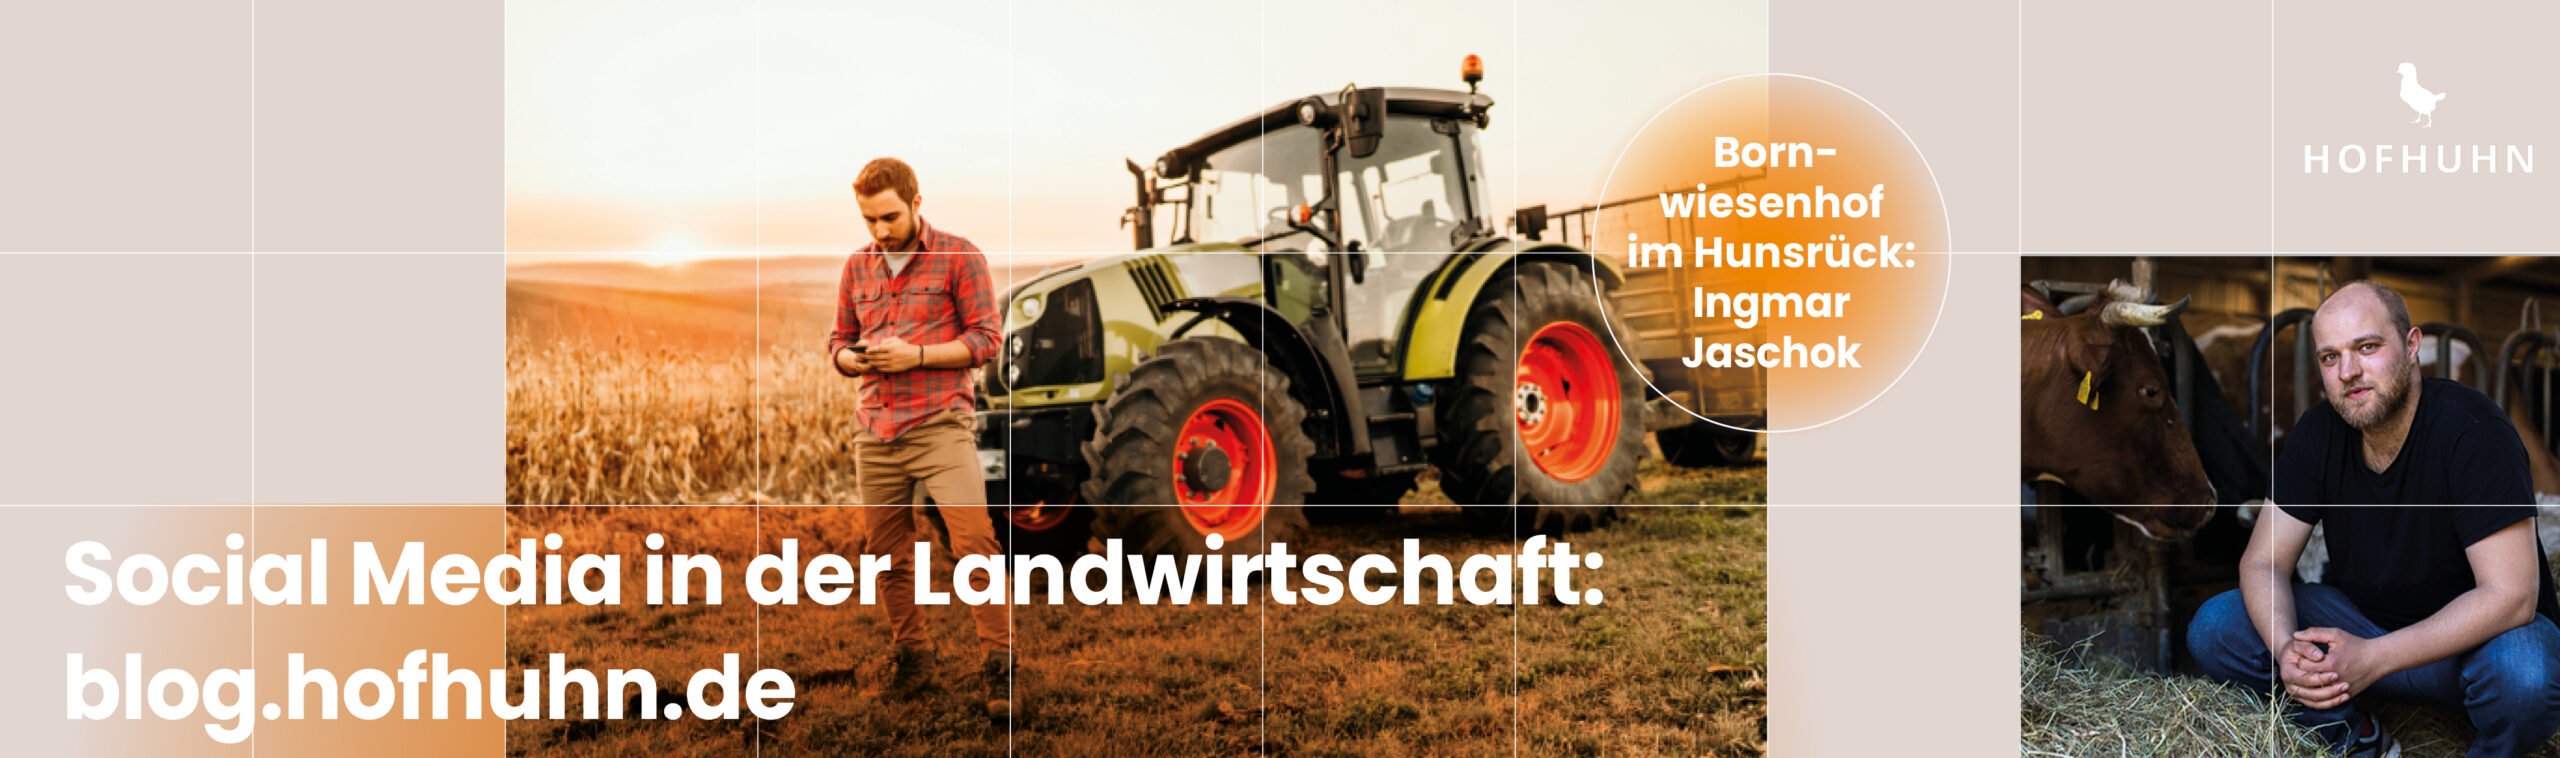 Social Media in der Landwirtschaft – Bornwiesenhof im Hunsrück